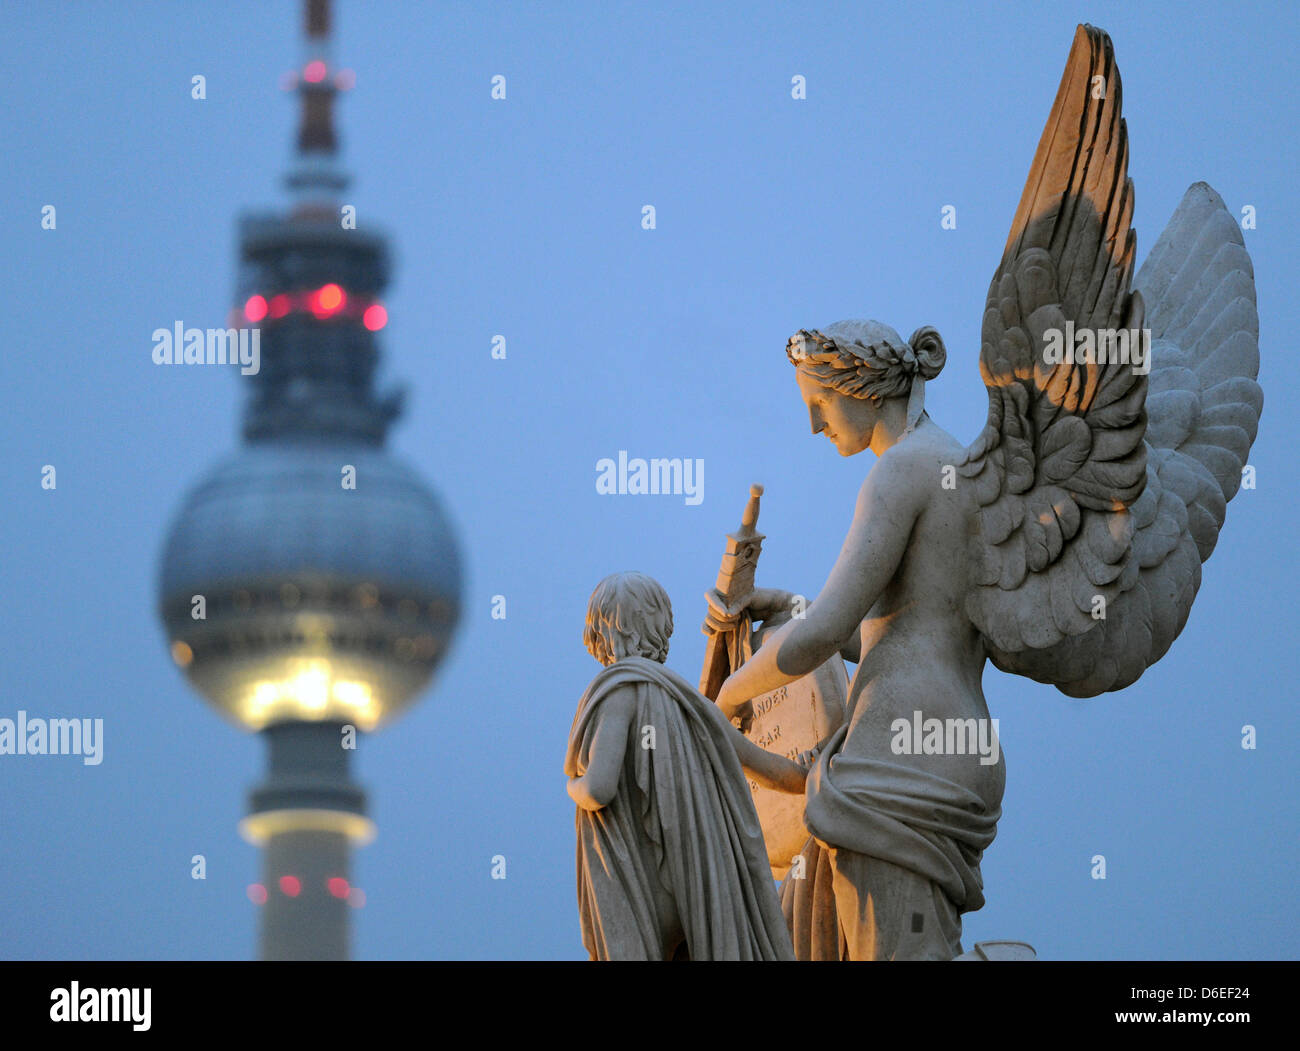 Una scultura da architetto tedesco Karl Friedrich Schinkel adorna il Schlossbruecke in vista della Torre della TV di Berlino, Germania, 27 gennaio 2012. Foto: Soeren Stache Foto Stock